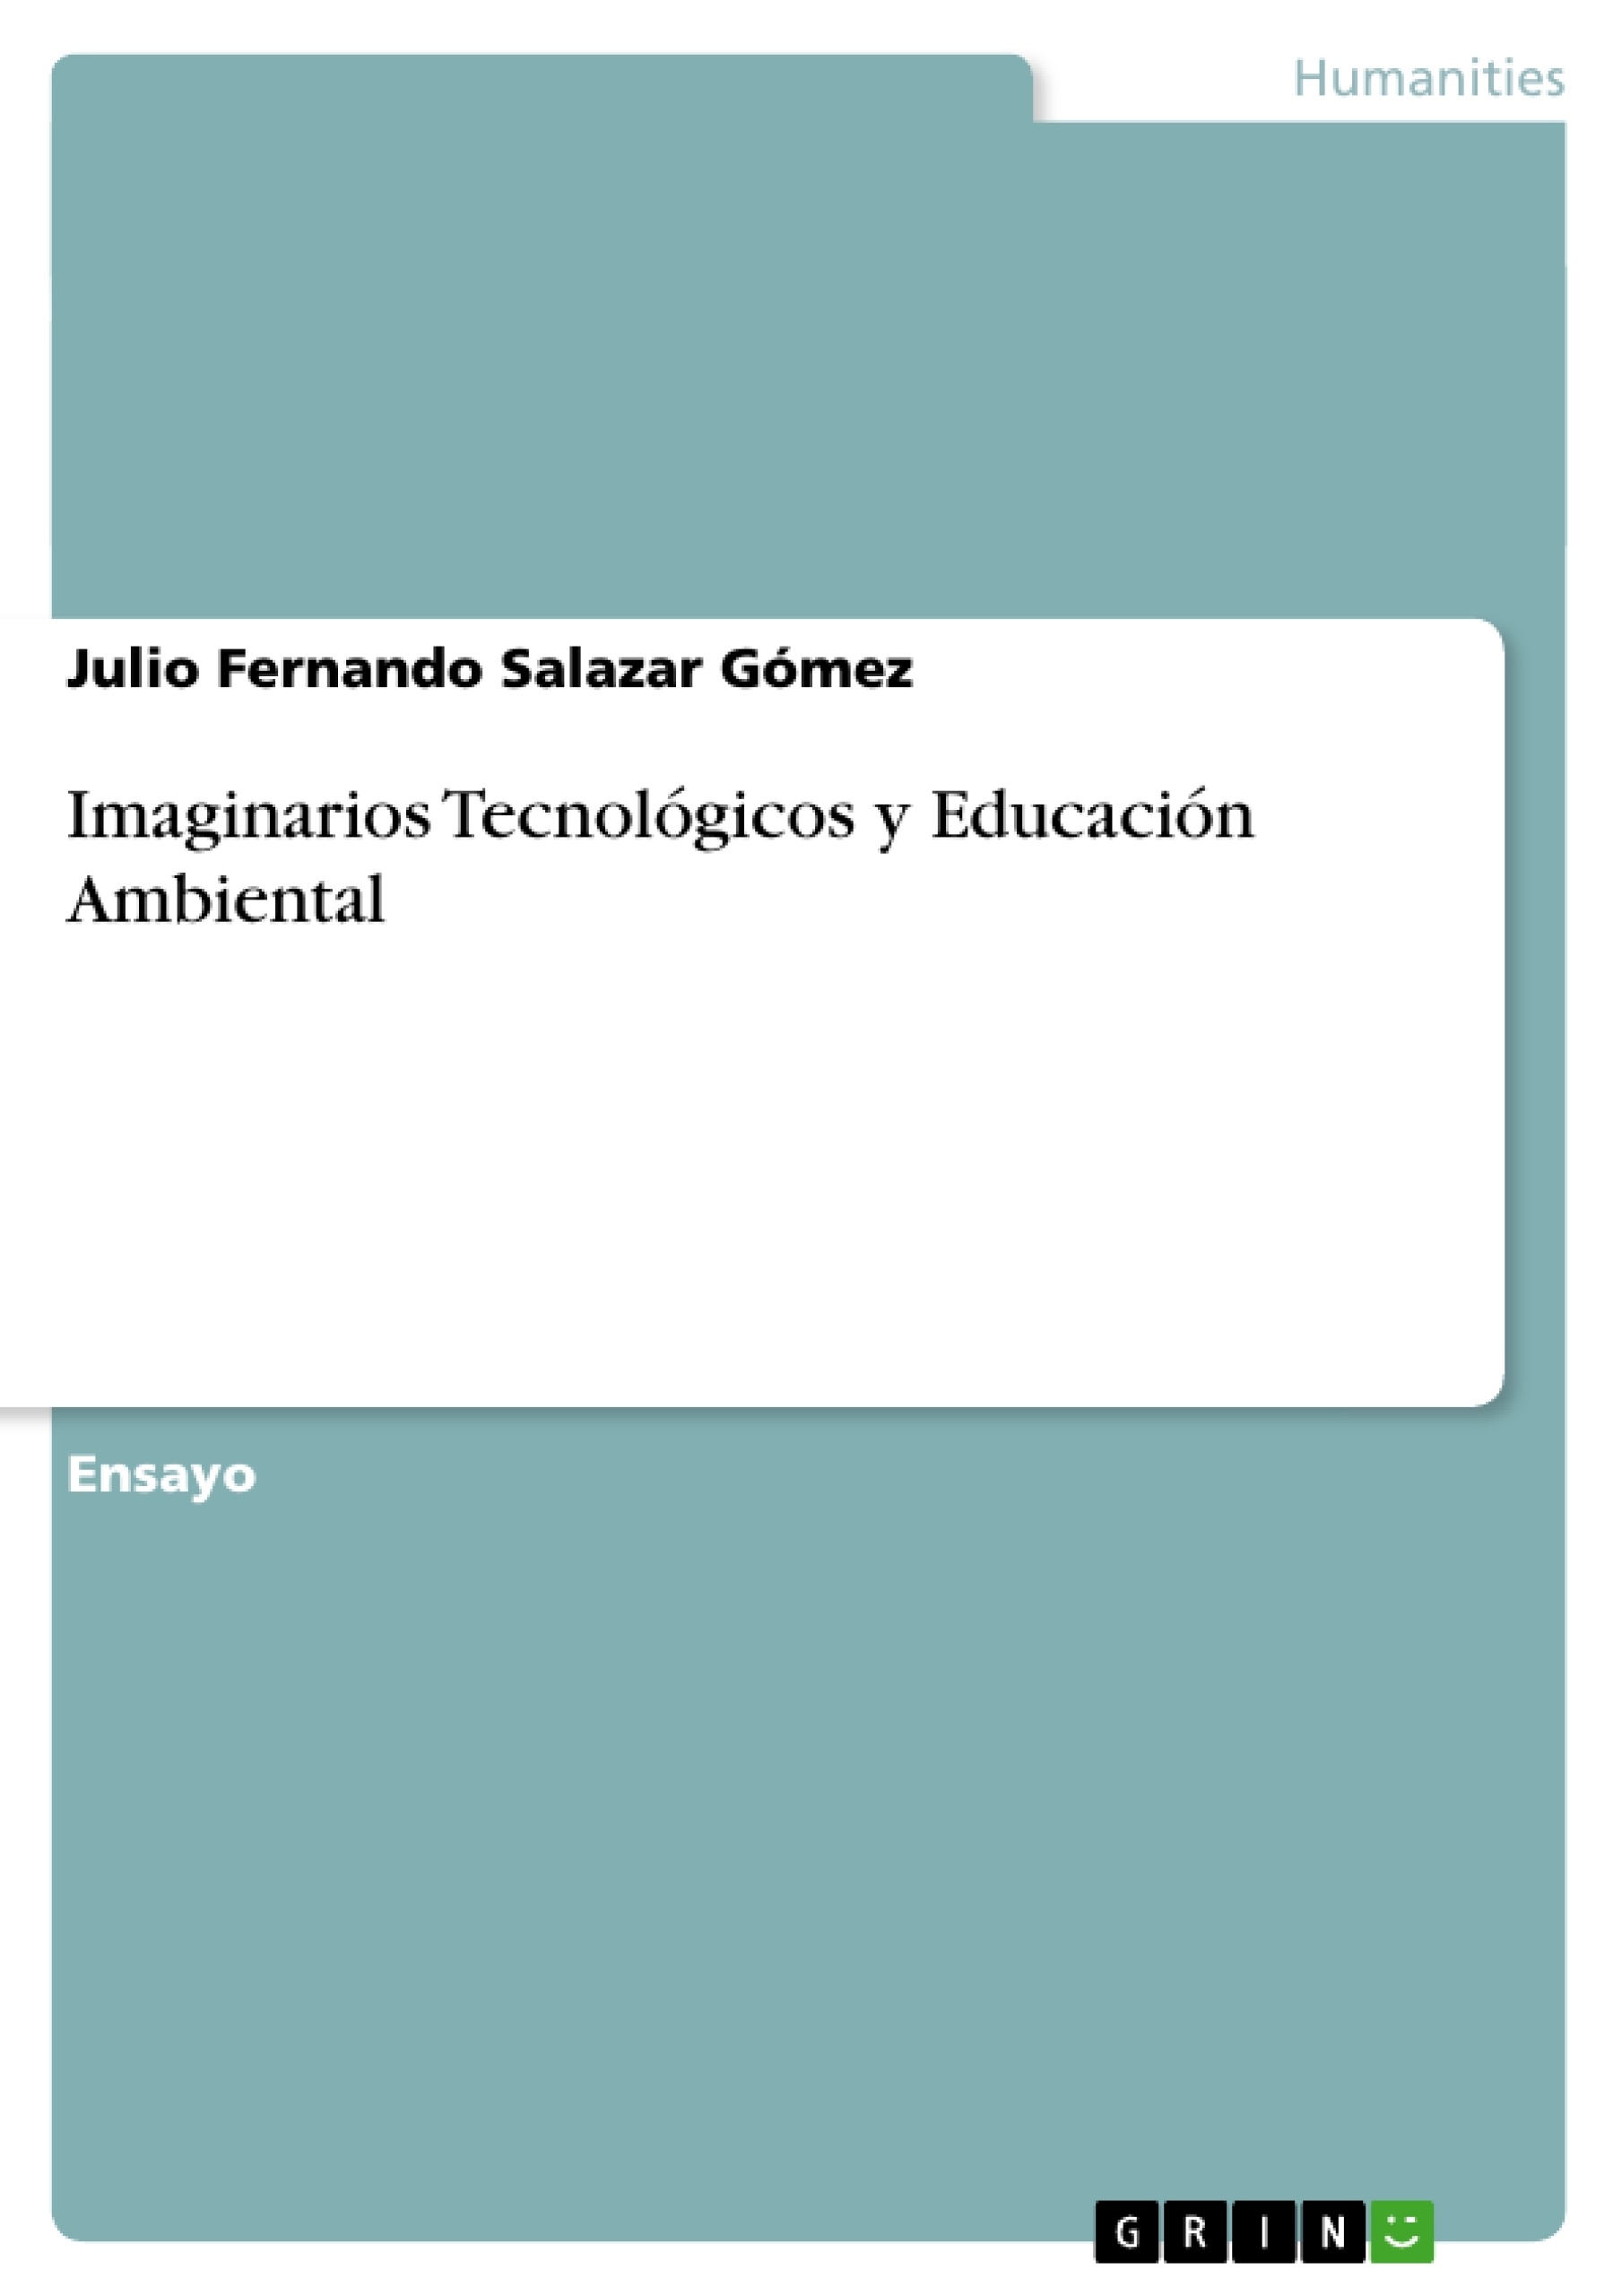 Titre: Imaginarios Tecnológicos y Educación Ambiental